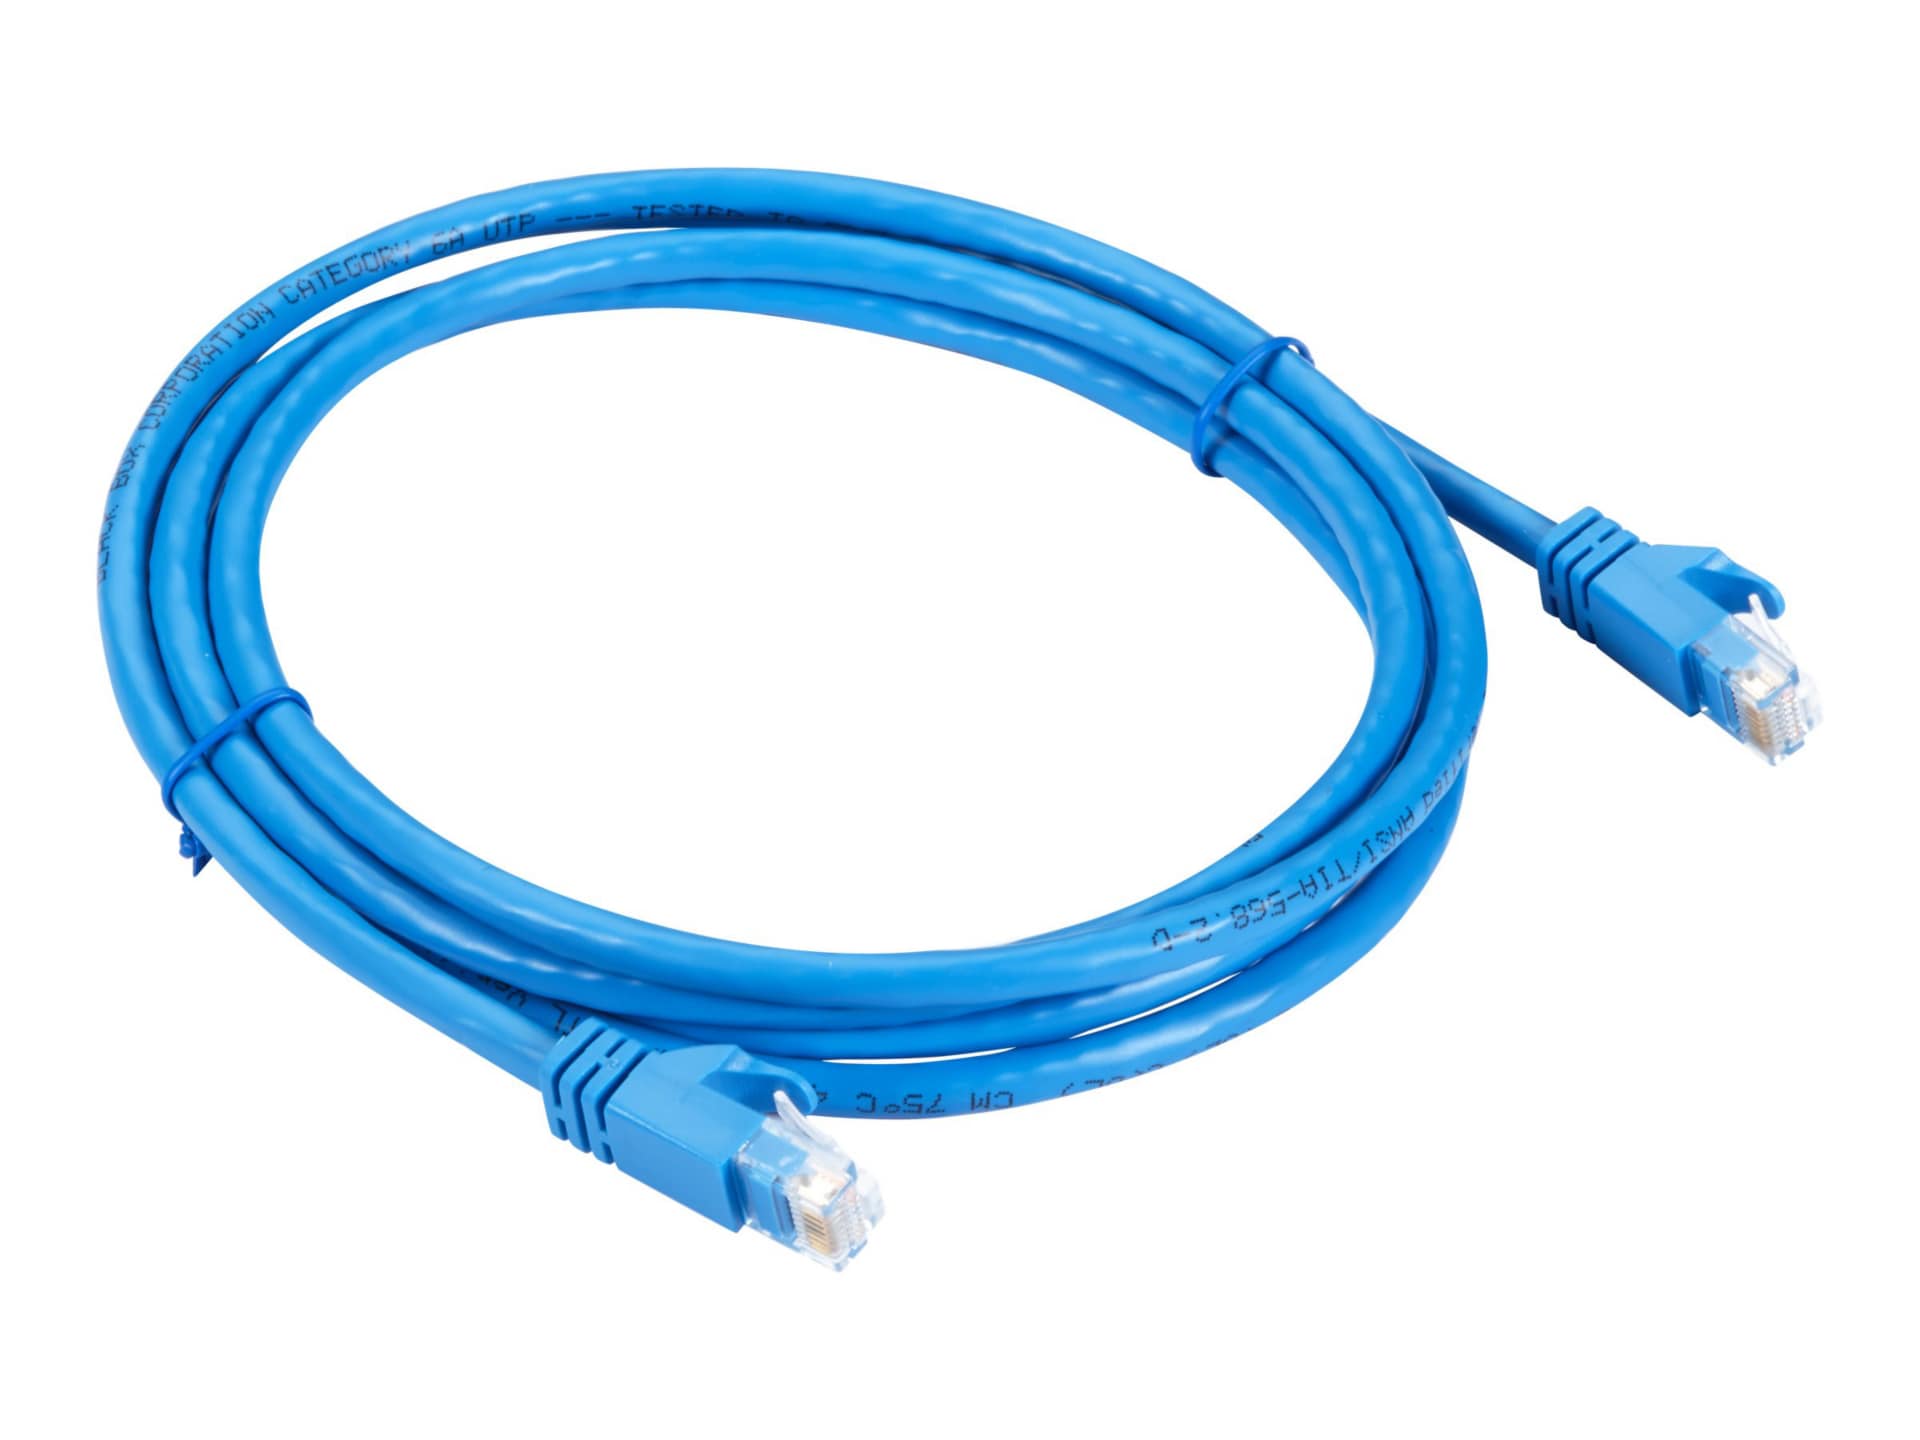 Black Box GigaTrue patch cable - 10 ft - blue